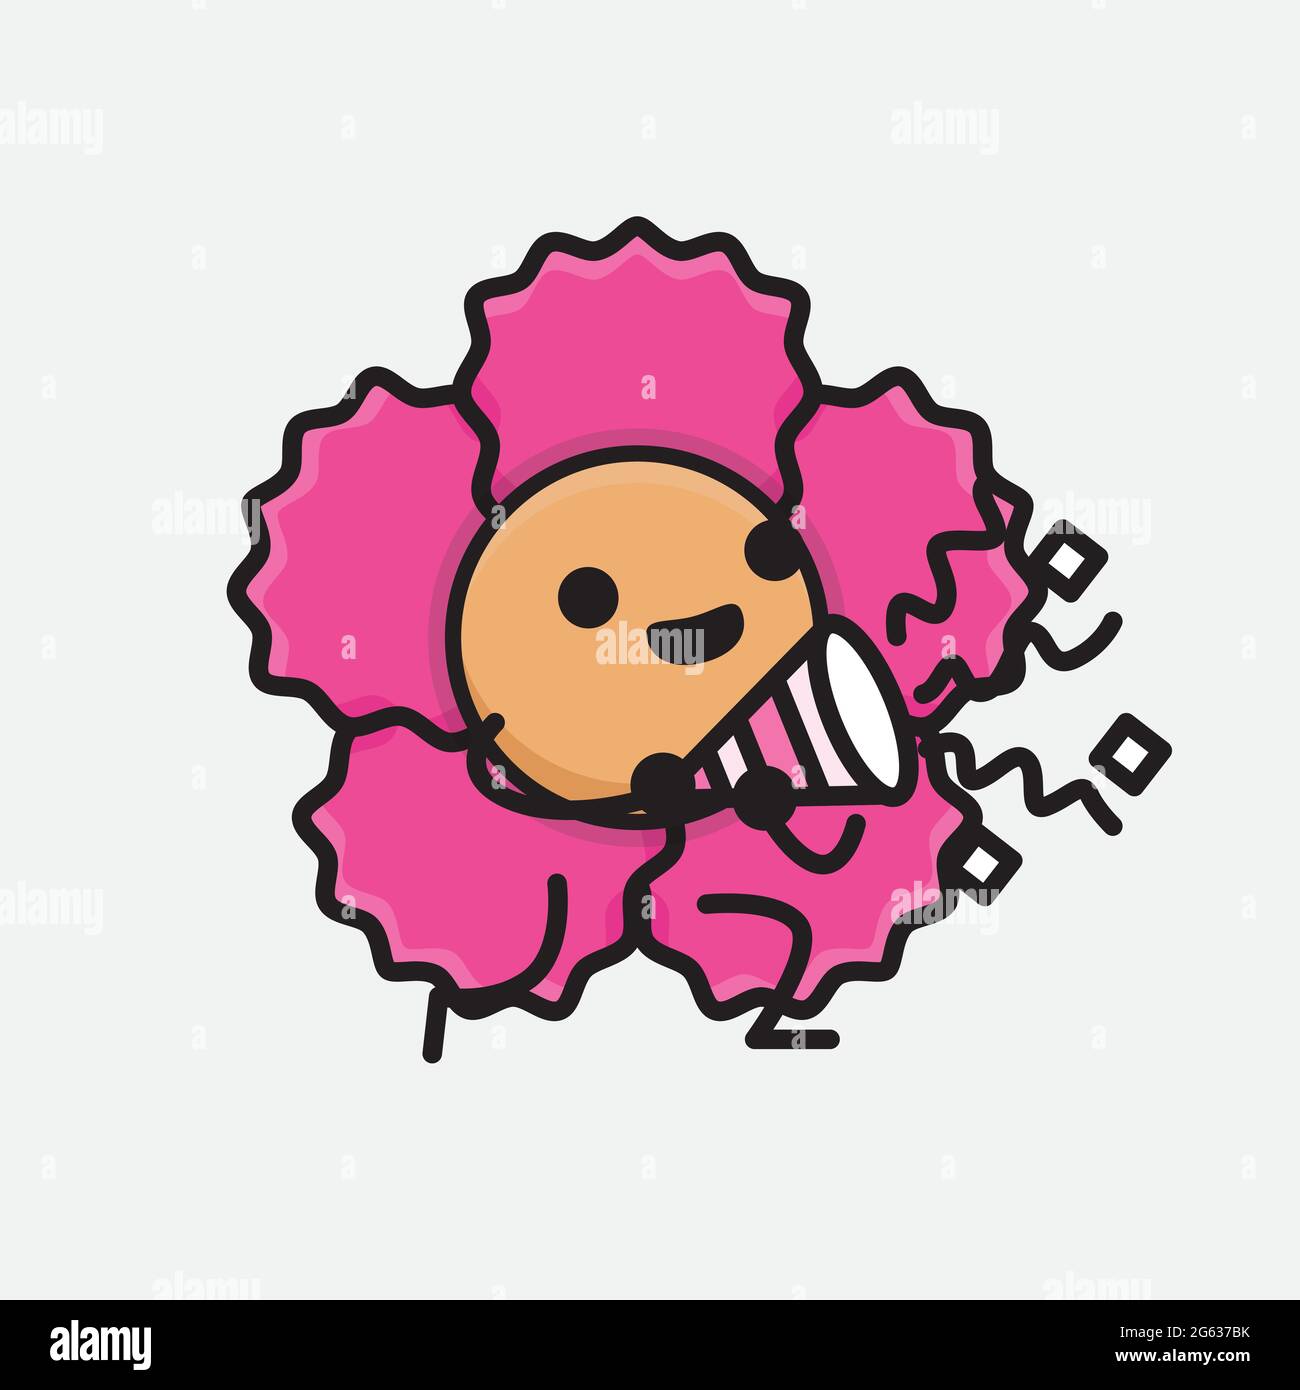 Vektor-Illustration von Blume Charakter mit niedlichem Gesicht, einfache Hände und Bein Linie Kunst auf isolierten Hintergrund. Flache Cartoon Doodle Stil. Stock Vektor